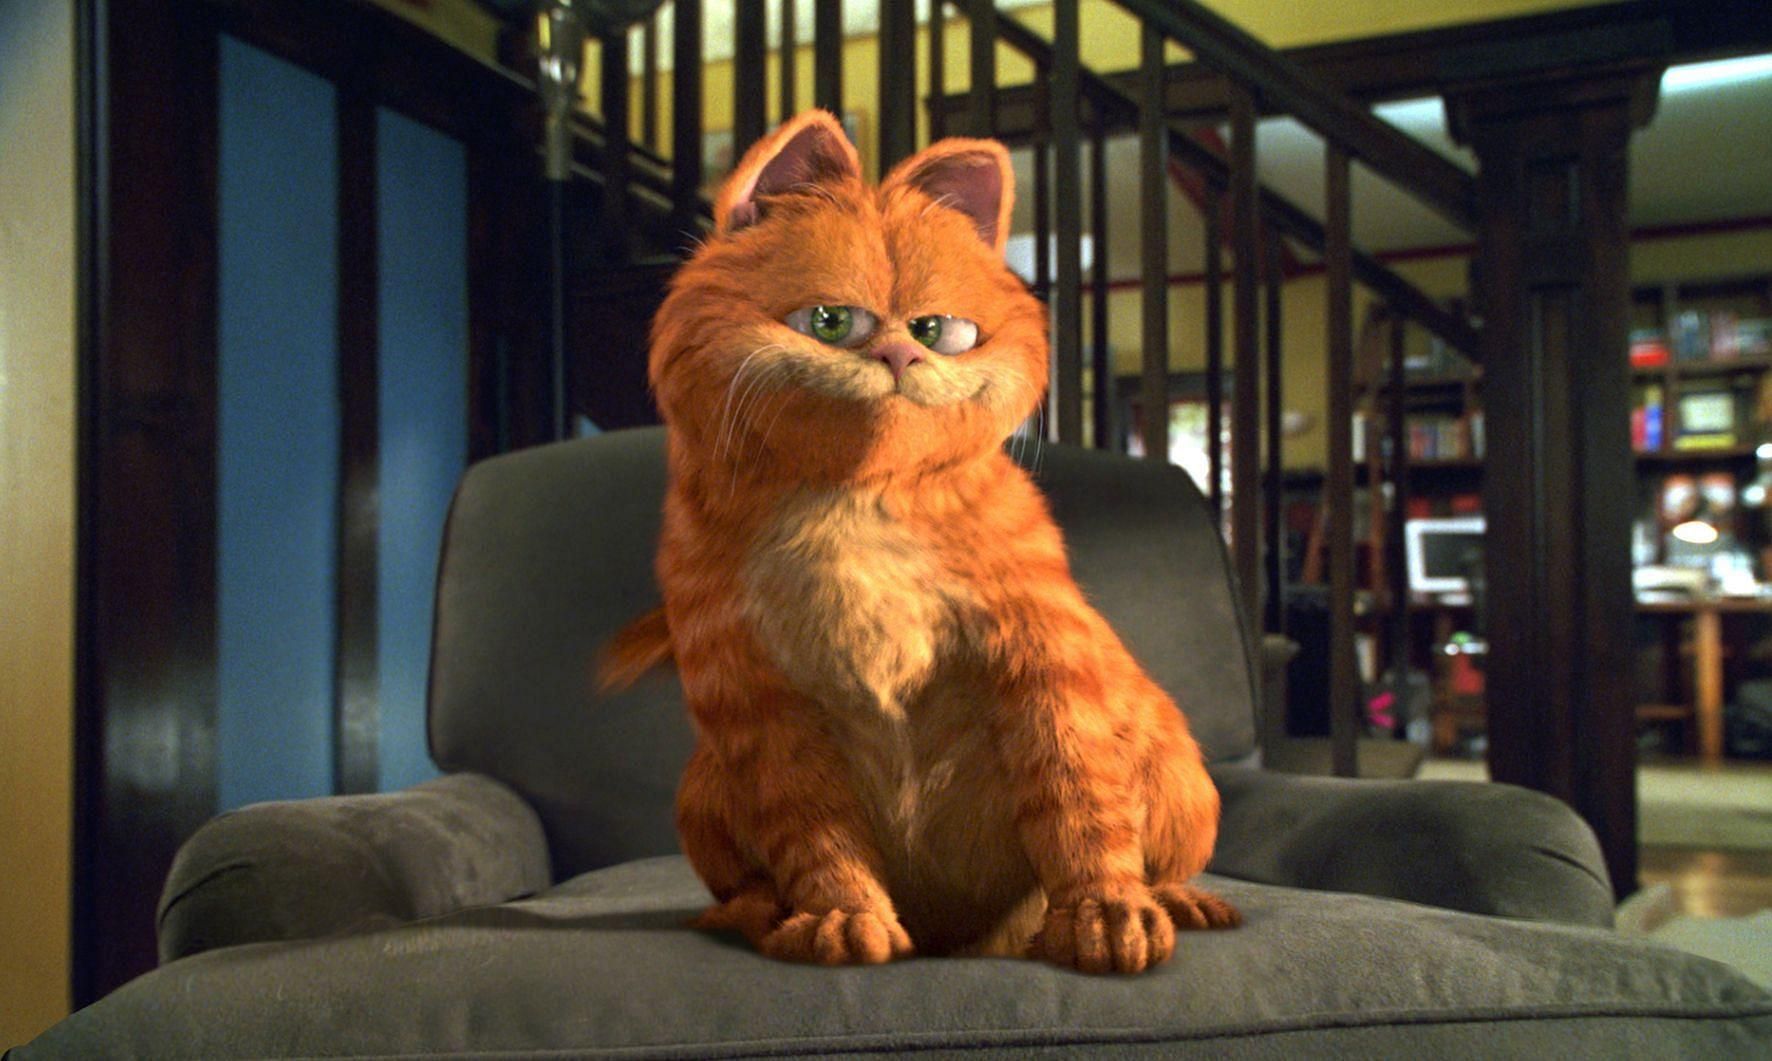 Garfield from the movie (Image via Nickelodeon)